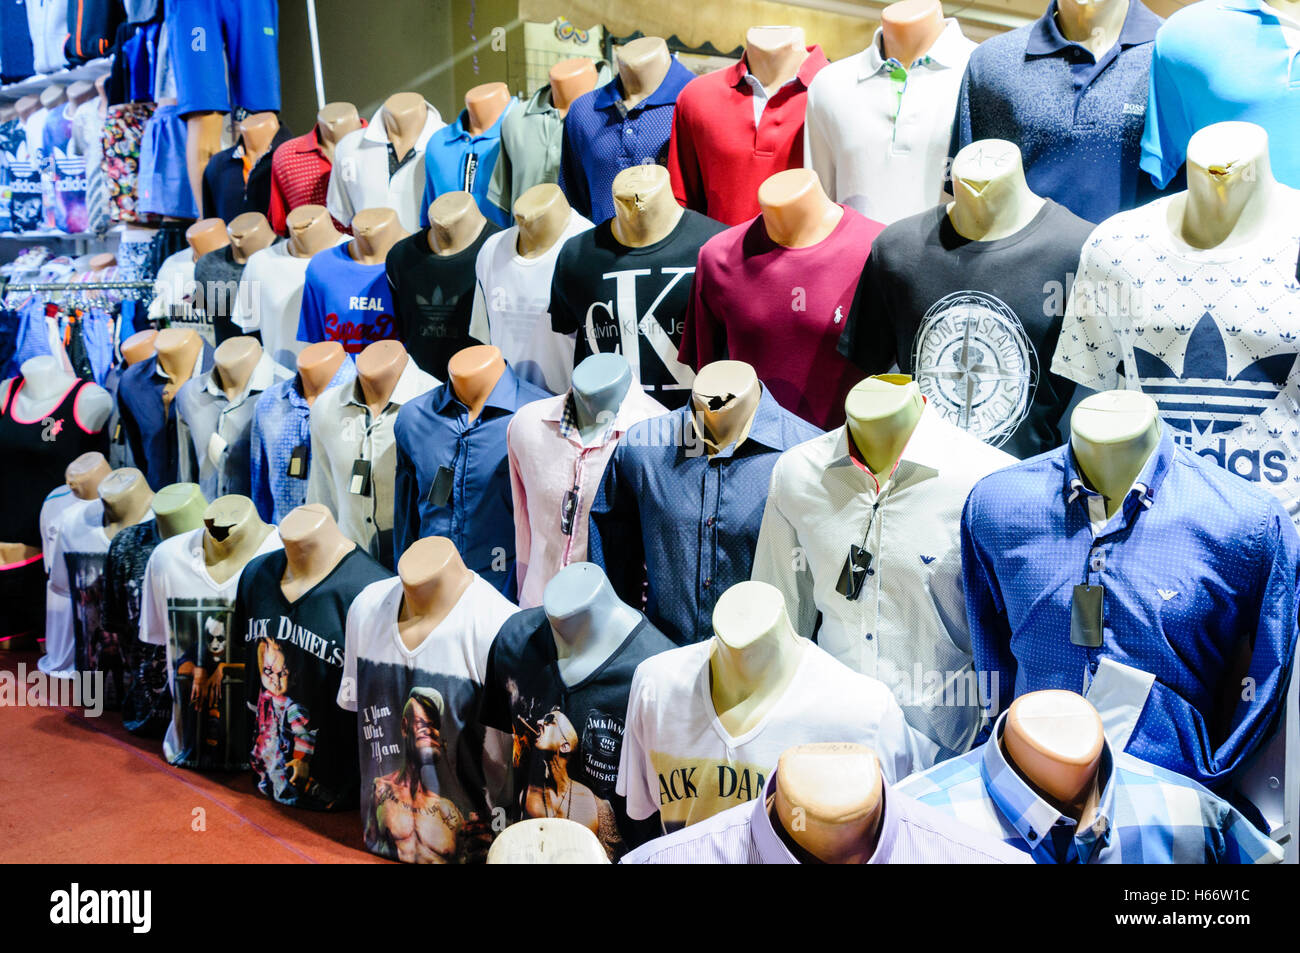 Rechazar Facilitar Inconveniencia Tienda en Turquía la venta de prendas de vestir falsificadas, camisetas y  ropa deportiva como Adidas, Calvin Klein, Jack Daniels, Superdry, Armani,  etc Fotografía de stock - Alamy